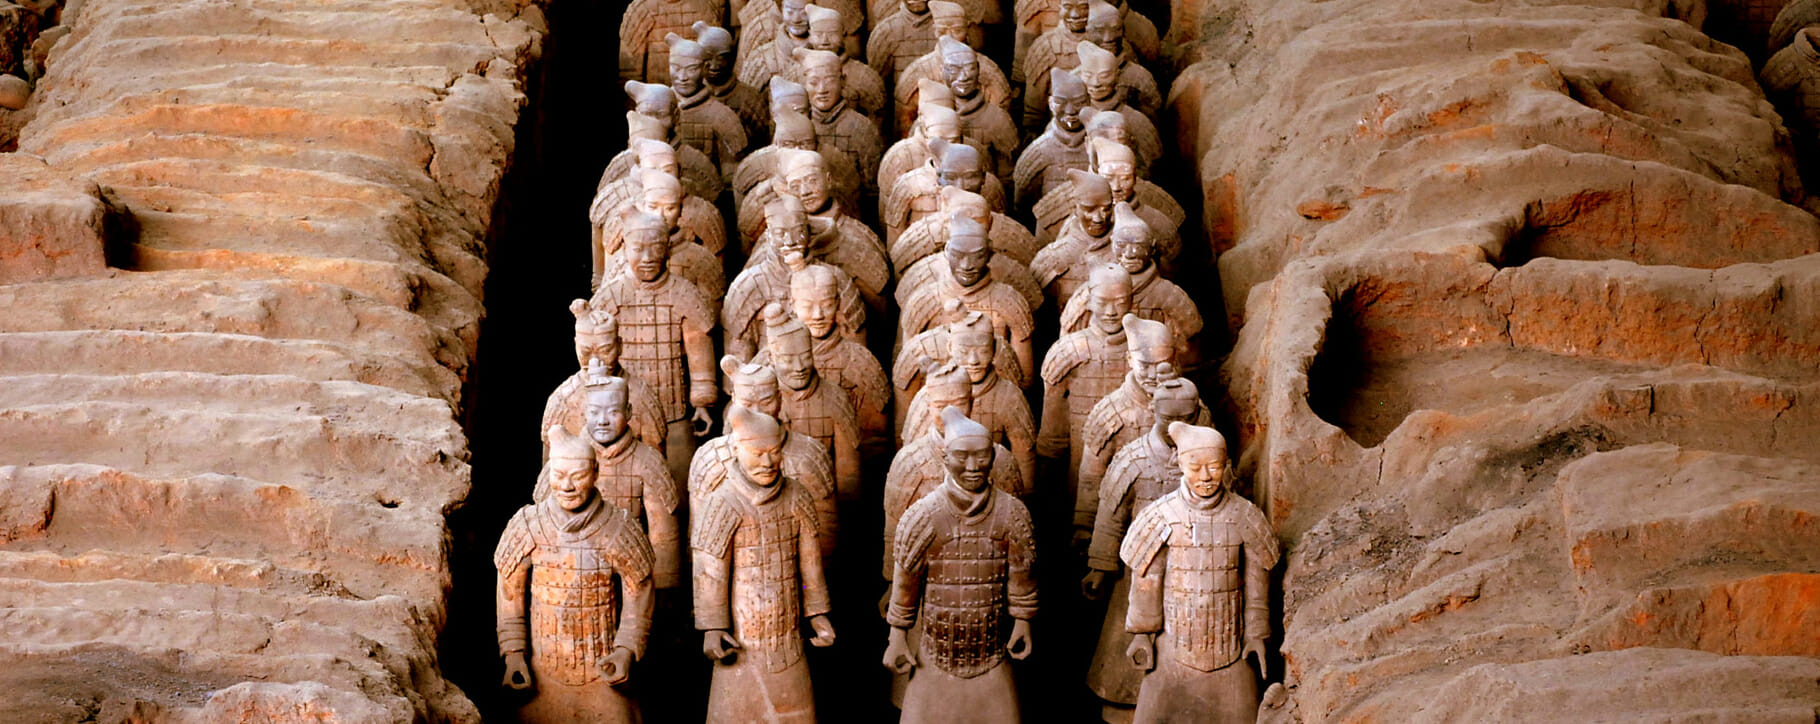 Terracotta Army of Qin Shi Huang